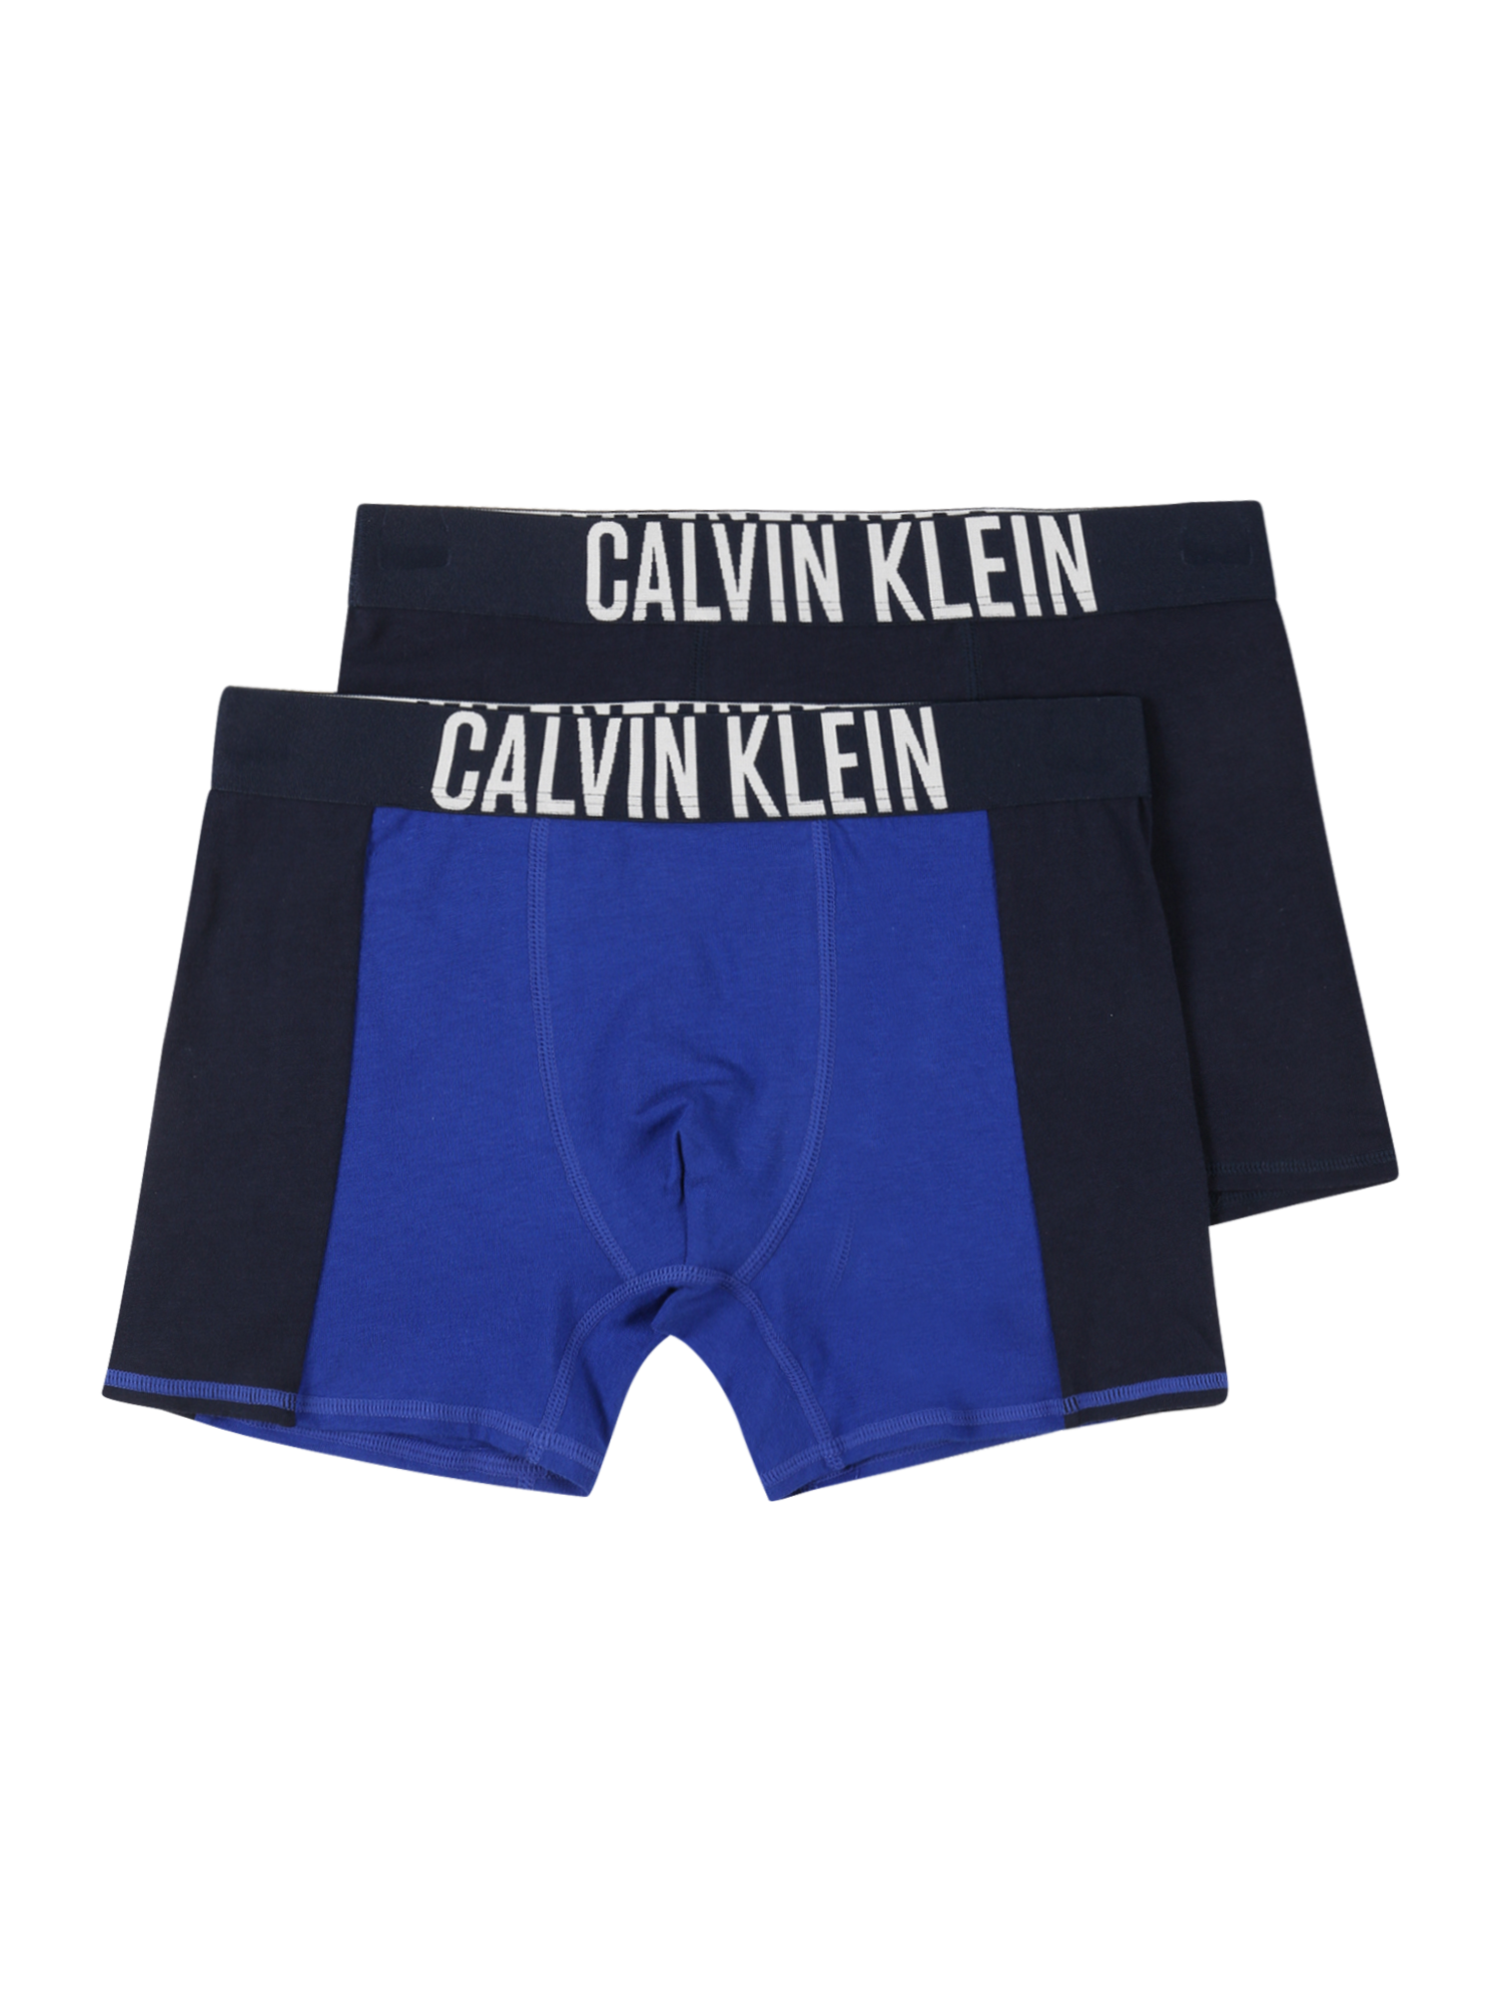 Młodzież (140-176 cm) Chłopcy Calvin Klein Underwear Bielizna Intense Power w kolorze Niebieska Noc, Niebieskim 